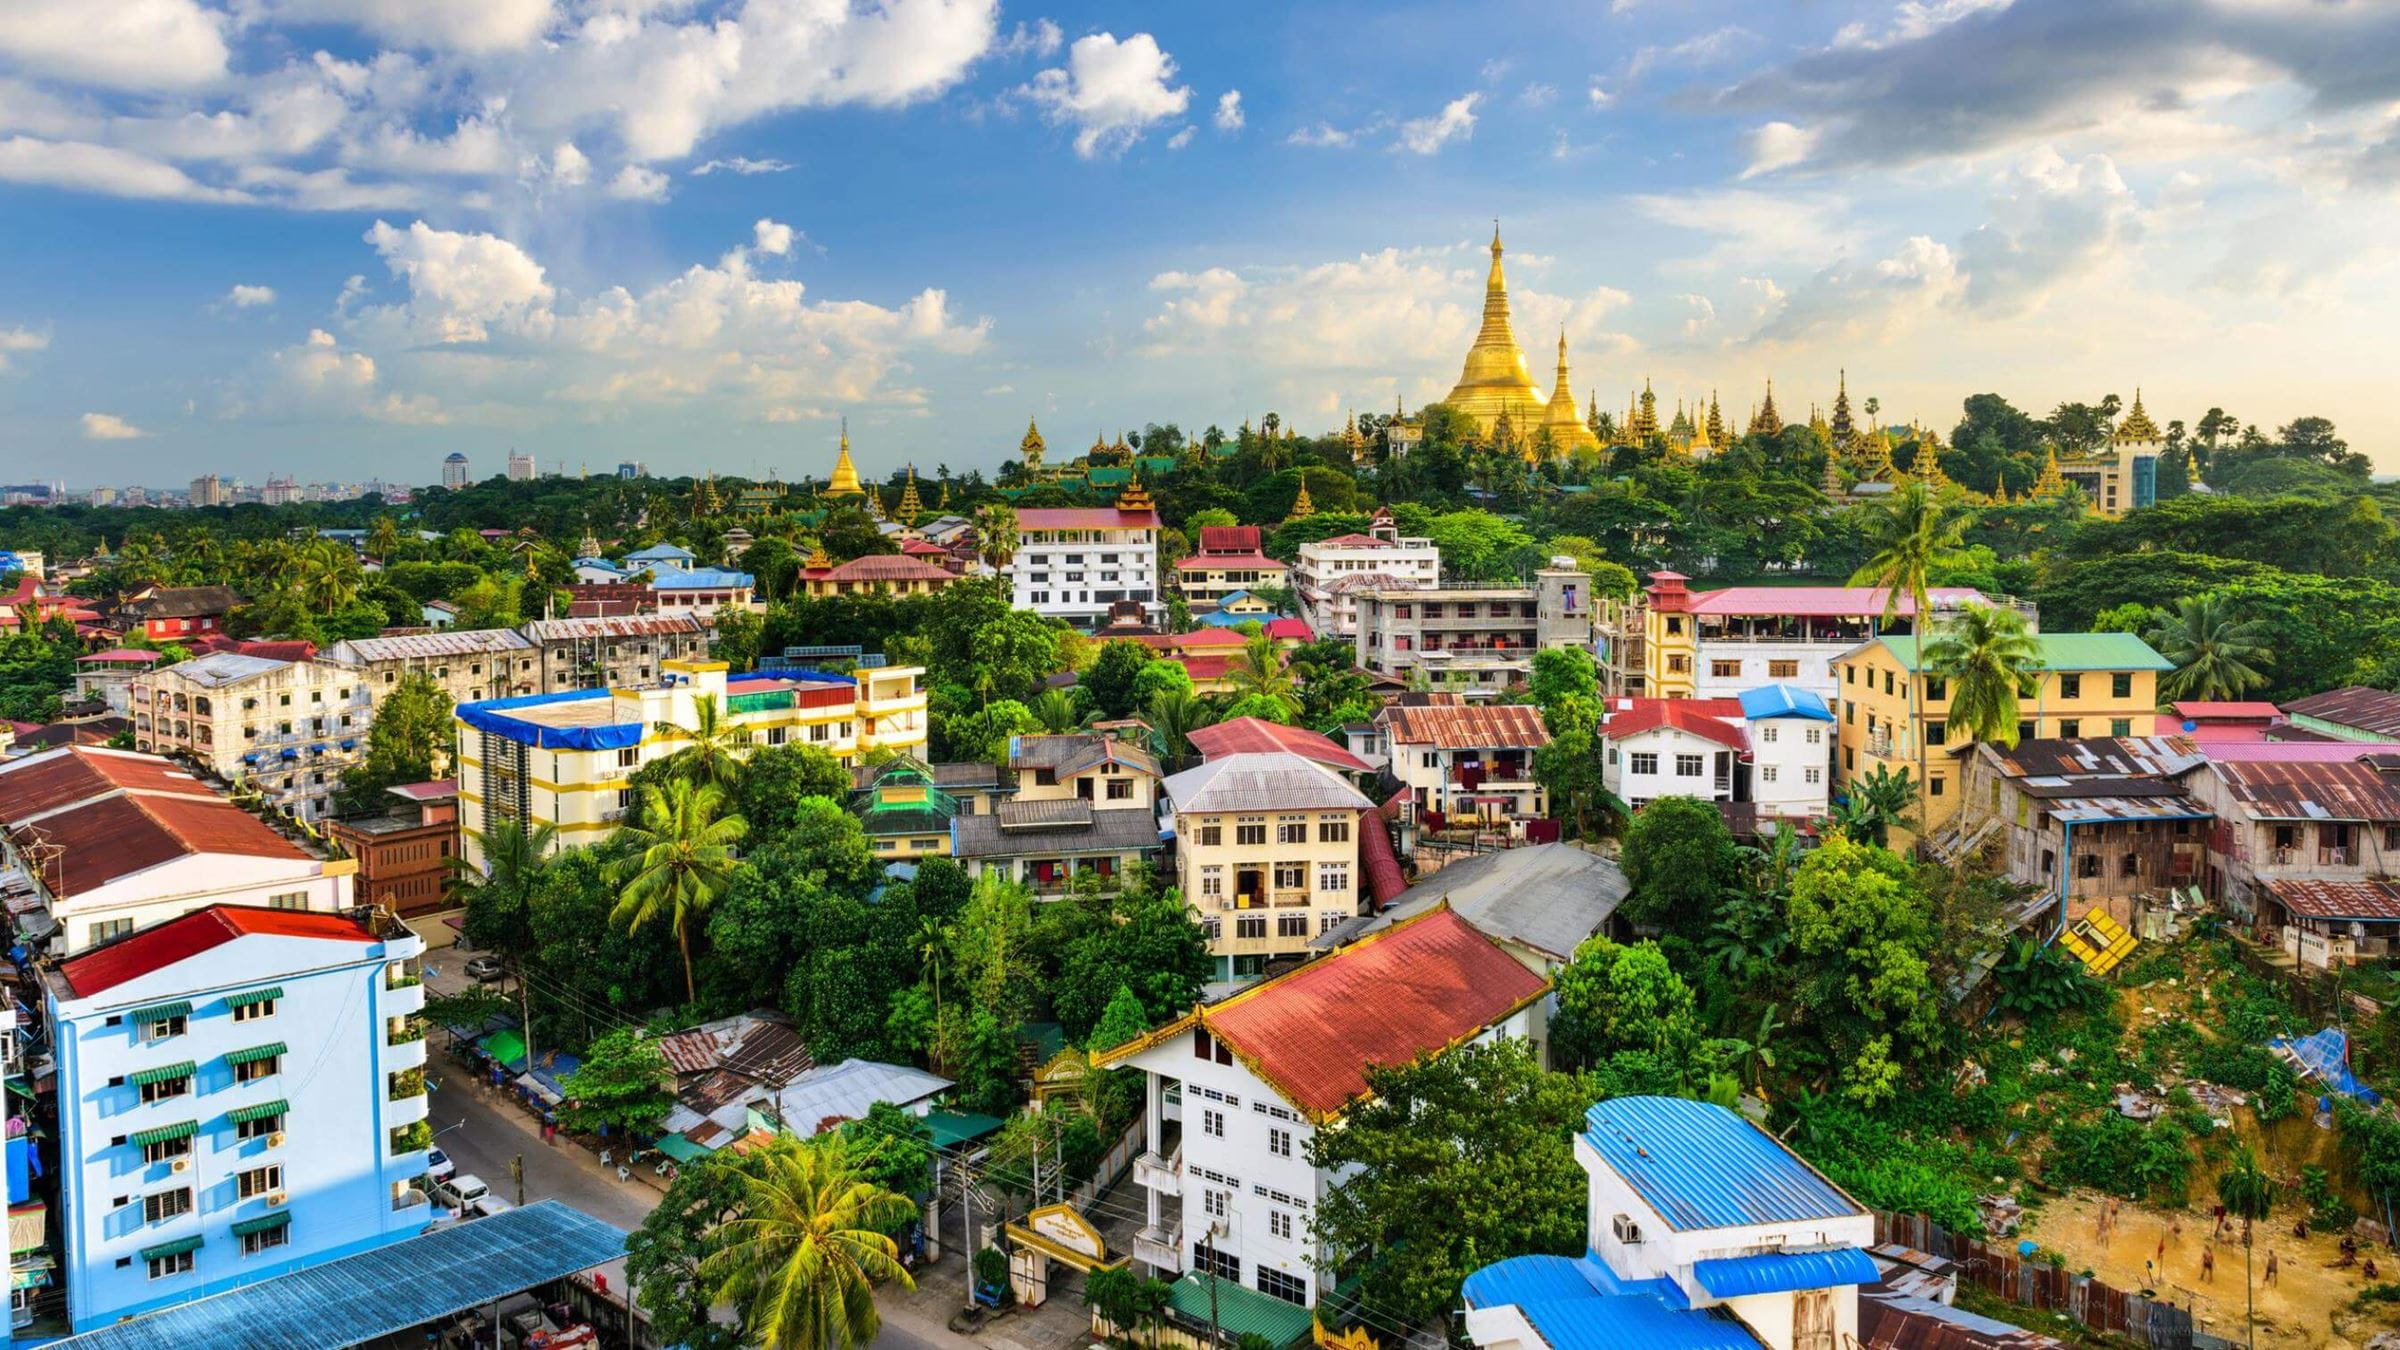 Blick über Dächer in Myanmar